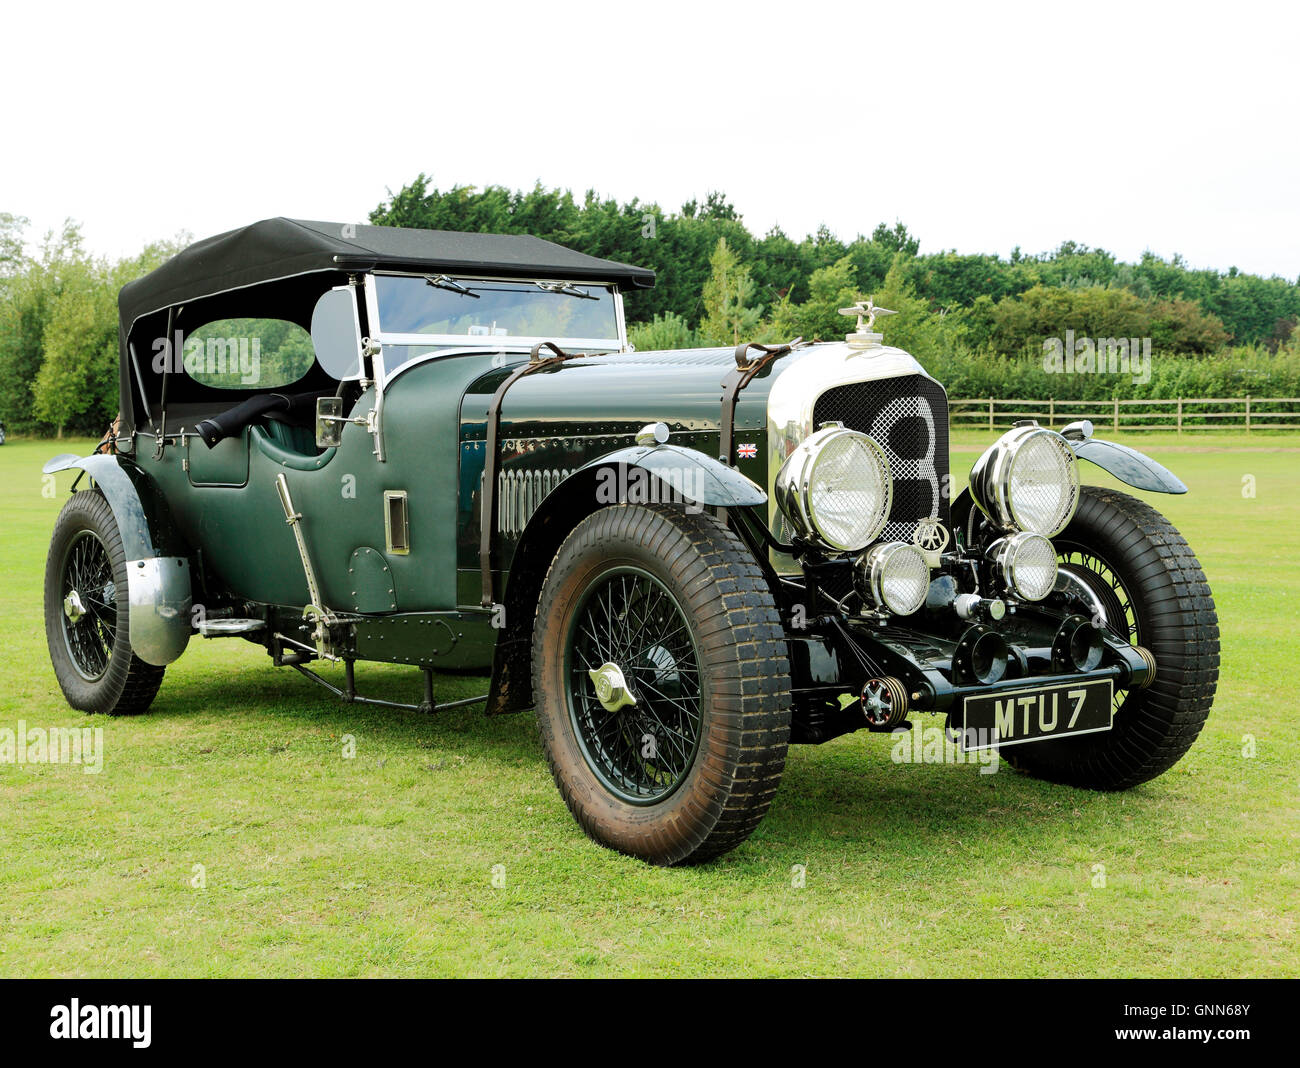 Bentley coupé 8, classique, vintage automobile c. Voitures automobiles automobile 1930 England UK English British huit cylindres Banque D'Images